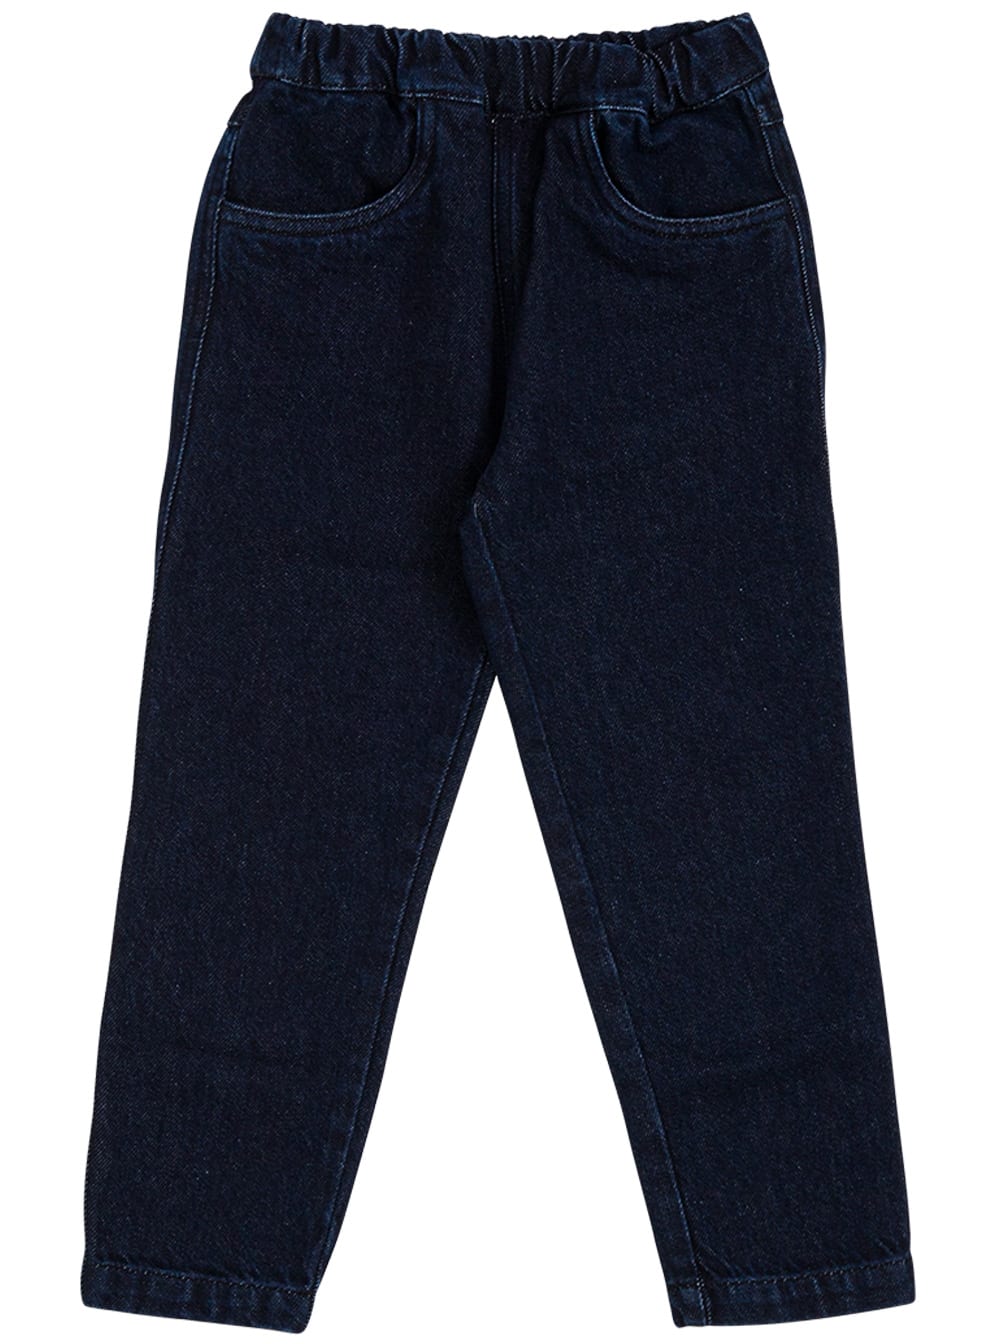 Philosophy di Lorenzo Serafini Kids Blue Stretch Denim Jeans